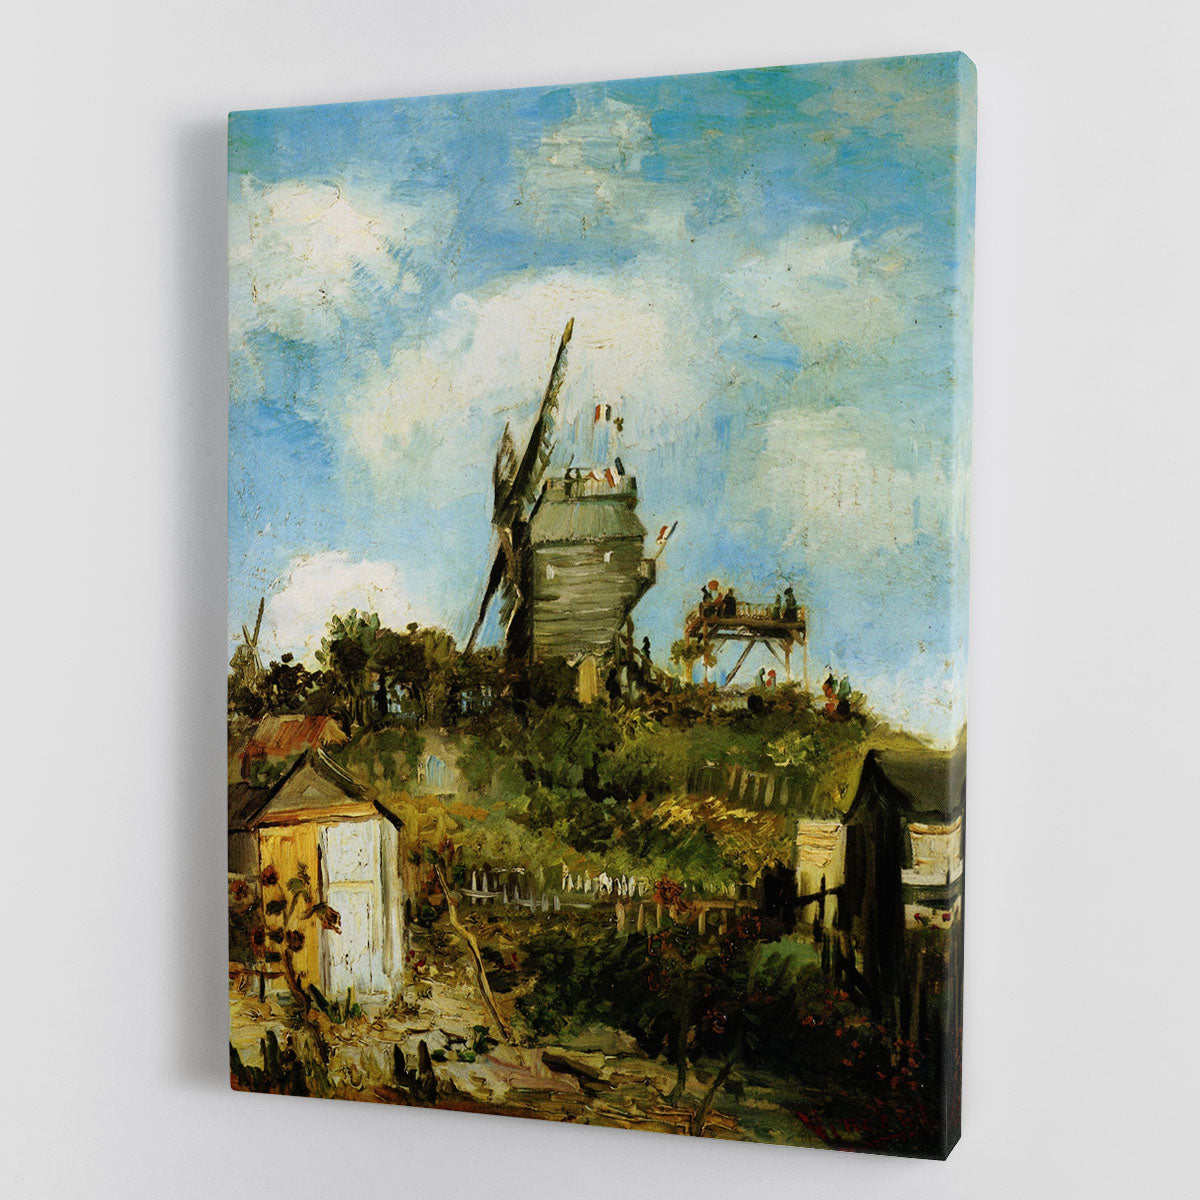 Le Moulin de la Galette by Van Gogh Canvas Print or Poster - Canvas Art Rocks - 1